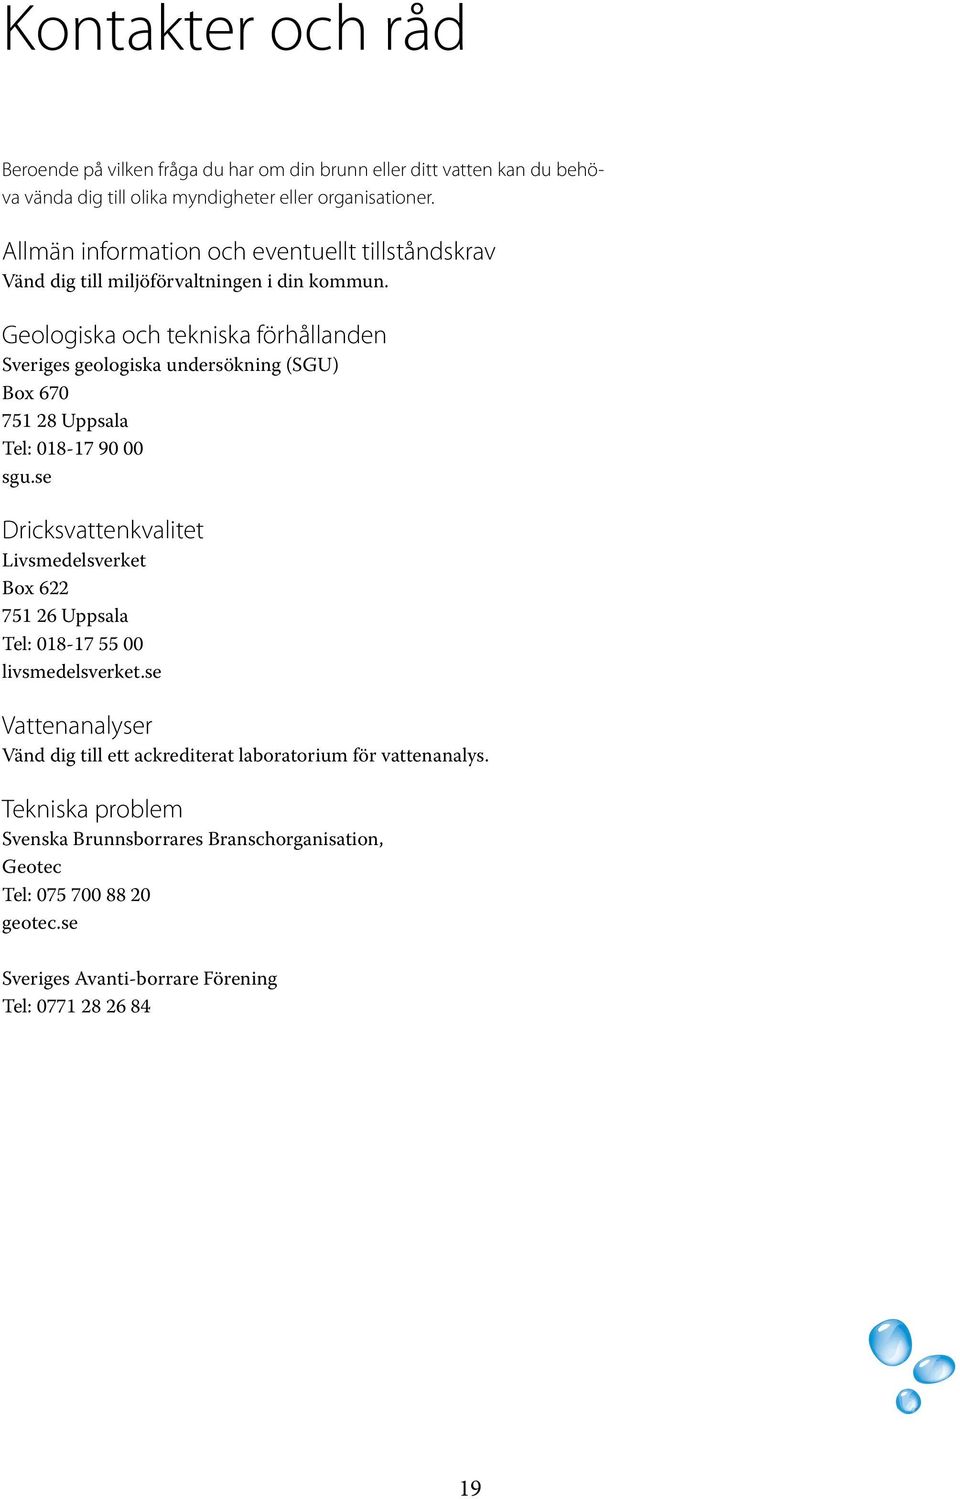 Geologiska och tekniska förhållanden Sveriges geologiska undersökning (SGU) Box 670 751 28 Uppsala Tel: 018-17 90 00 sgu.